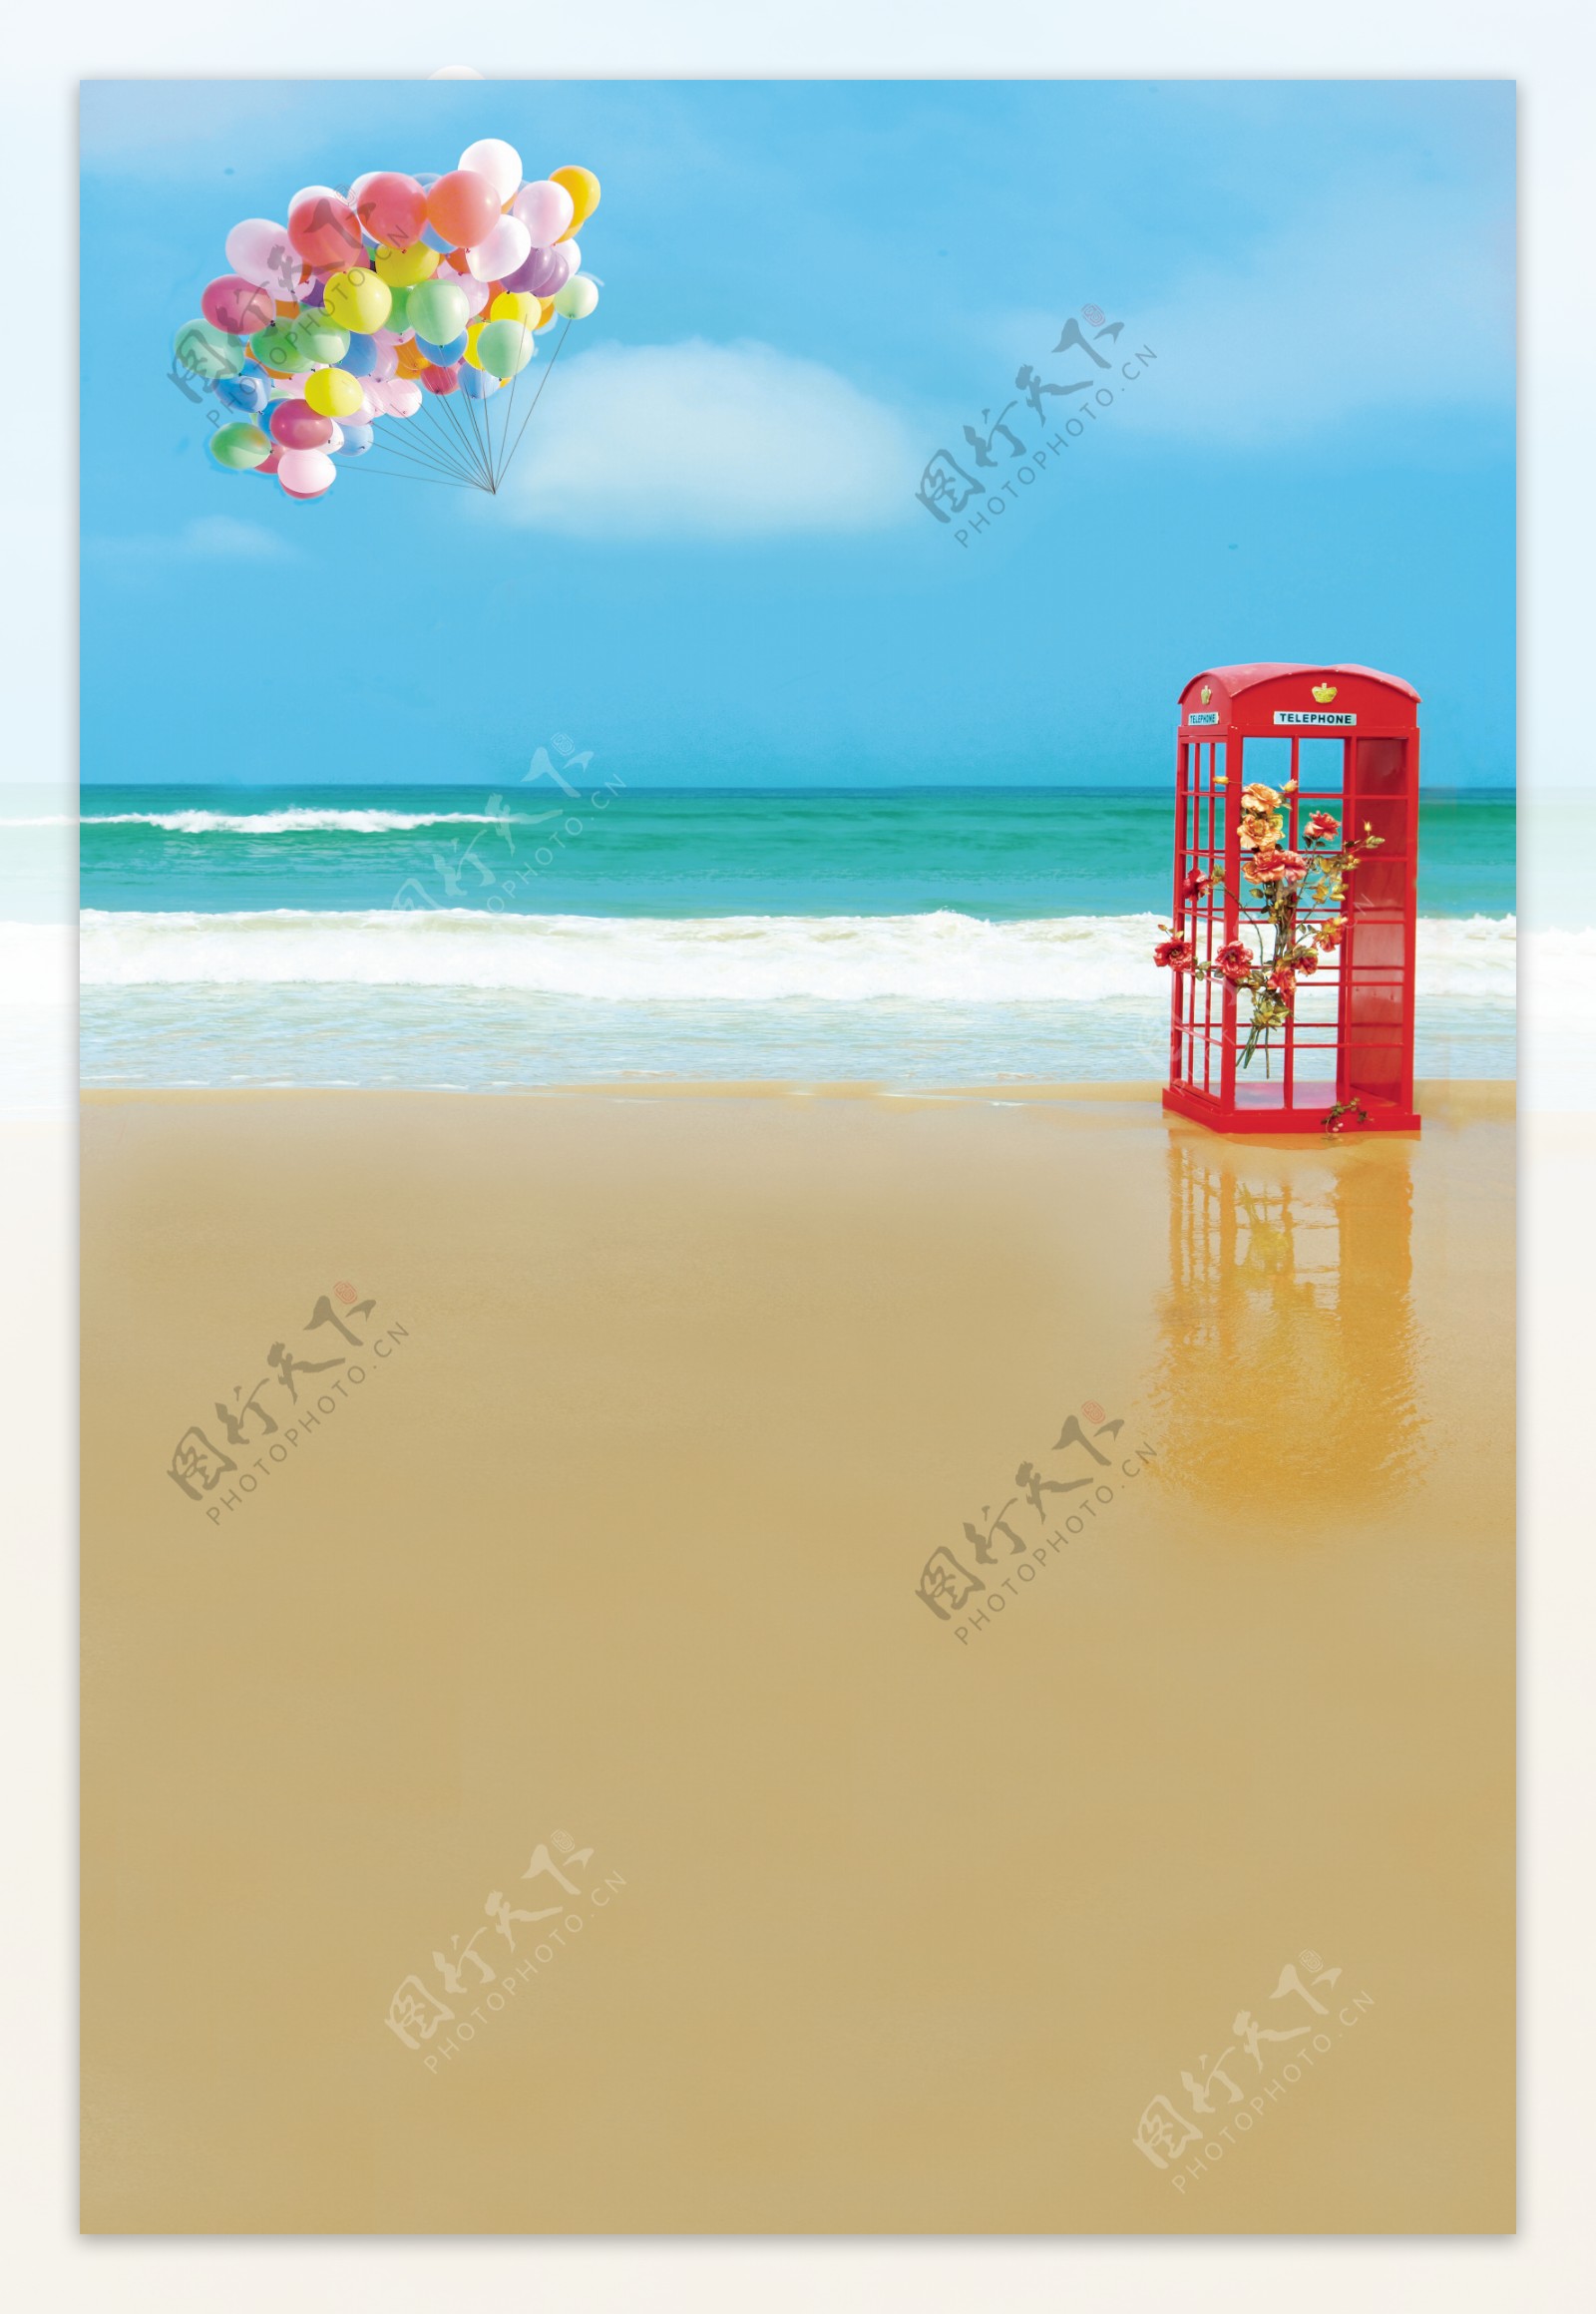 彩色气球与电话亭影楼摄影背景图片